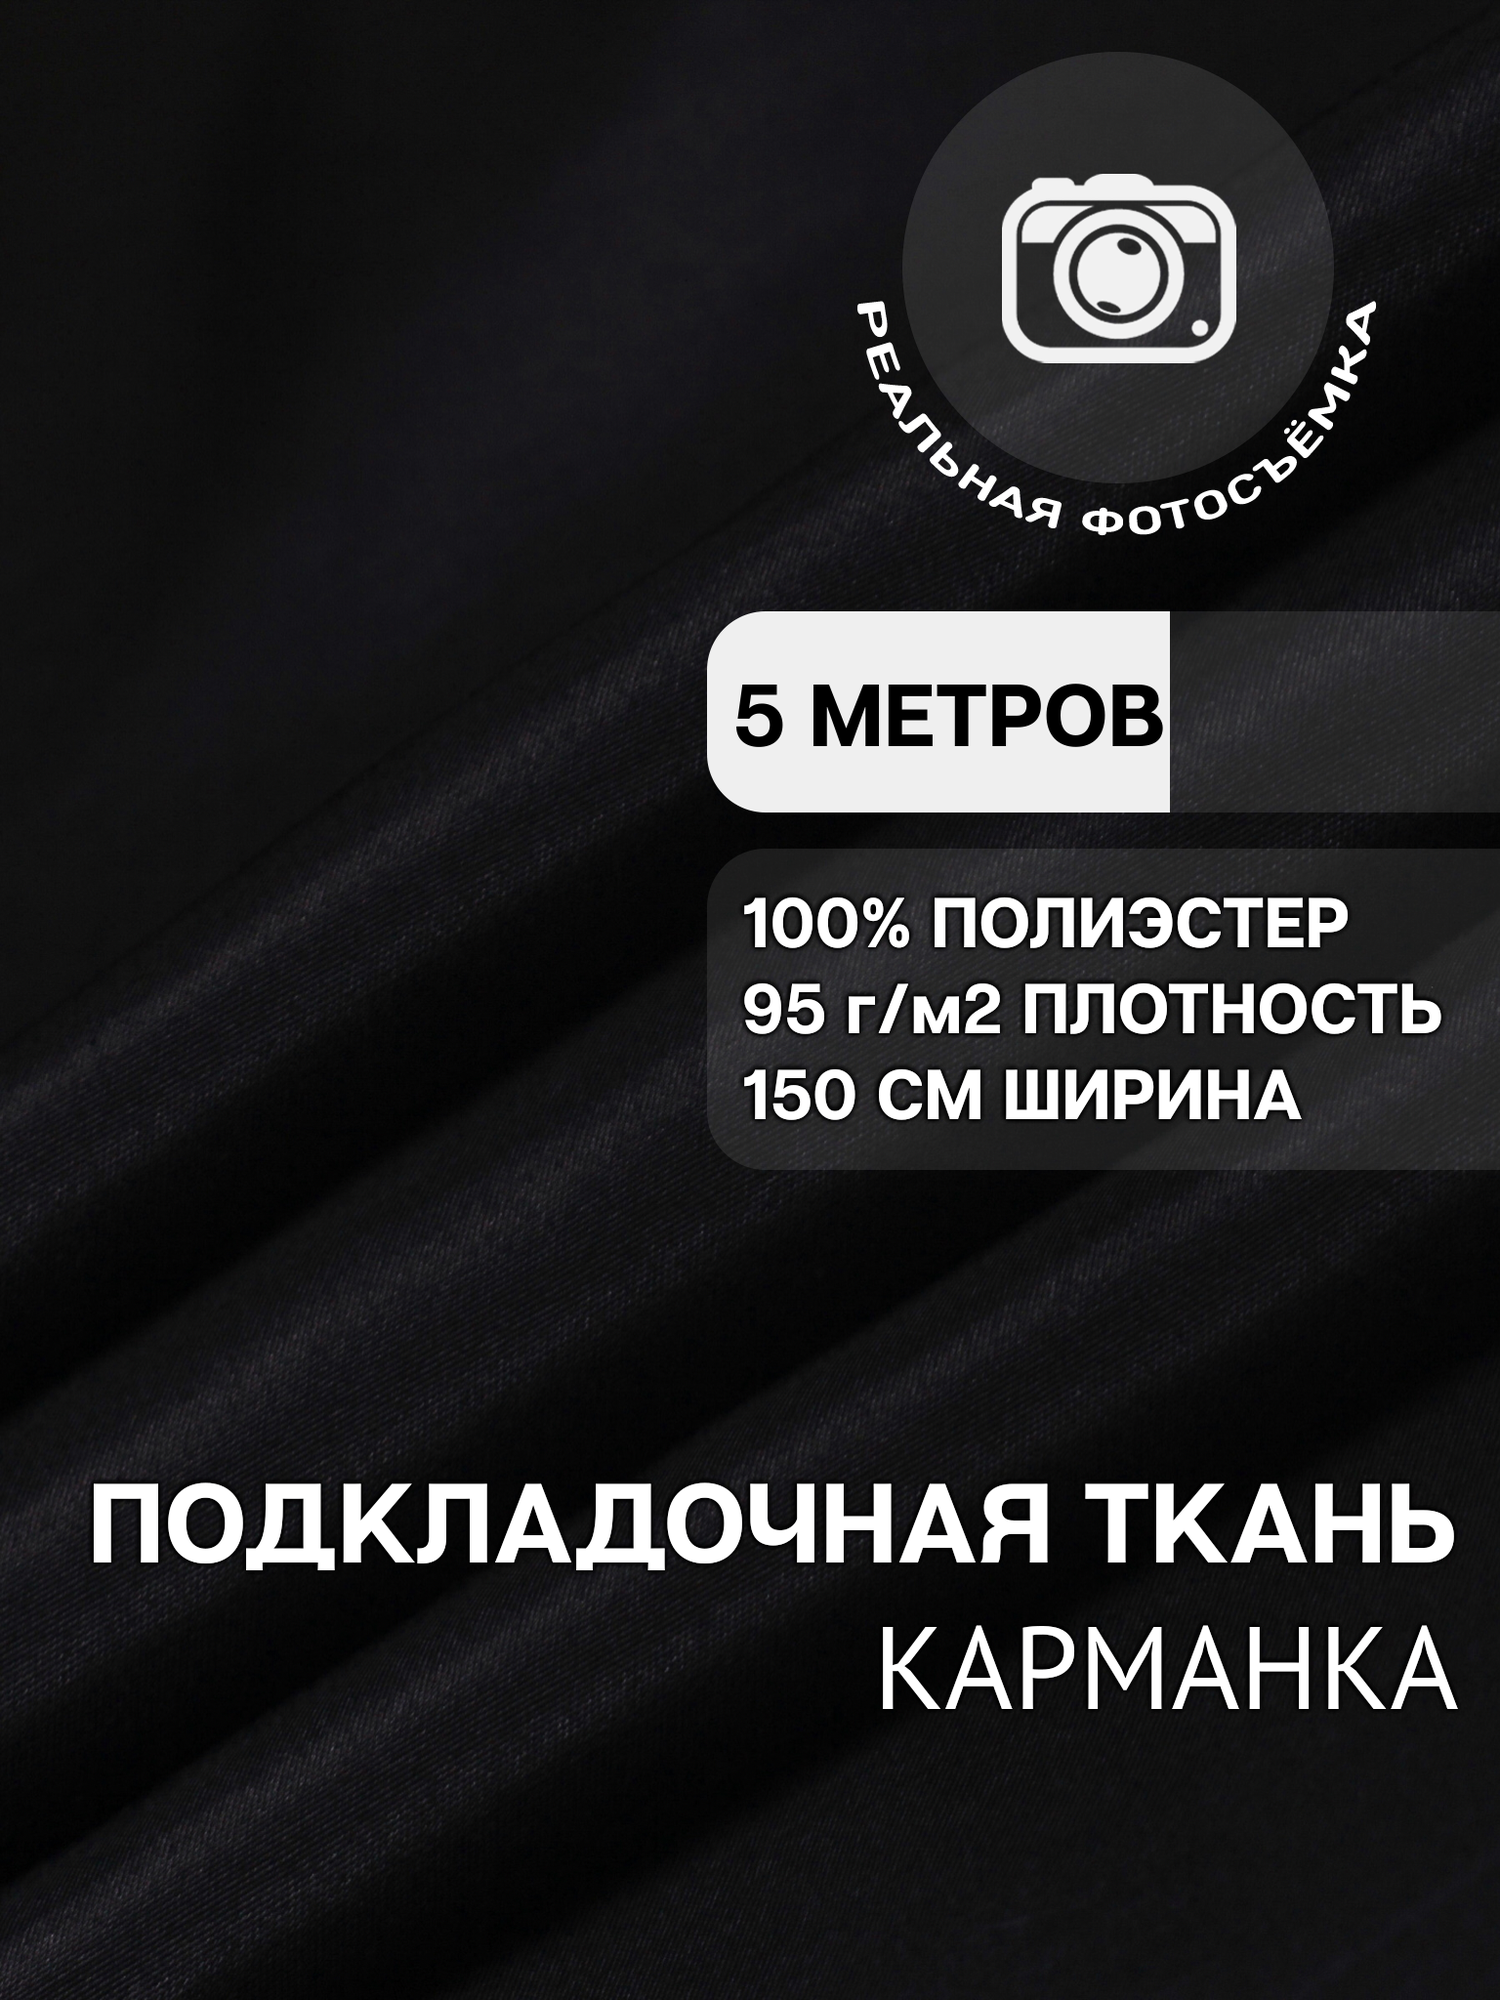 Ткань карманная подкладочная чёрная для одежды MDC FABRICS K95/4 для шитья. Полиэстер 100%. Отрез 5 метров